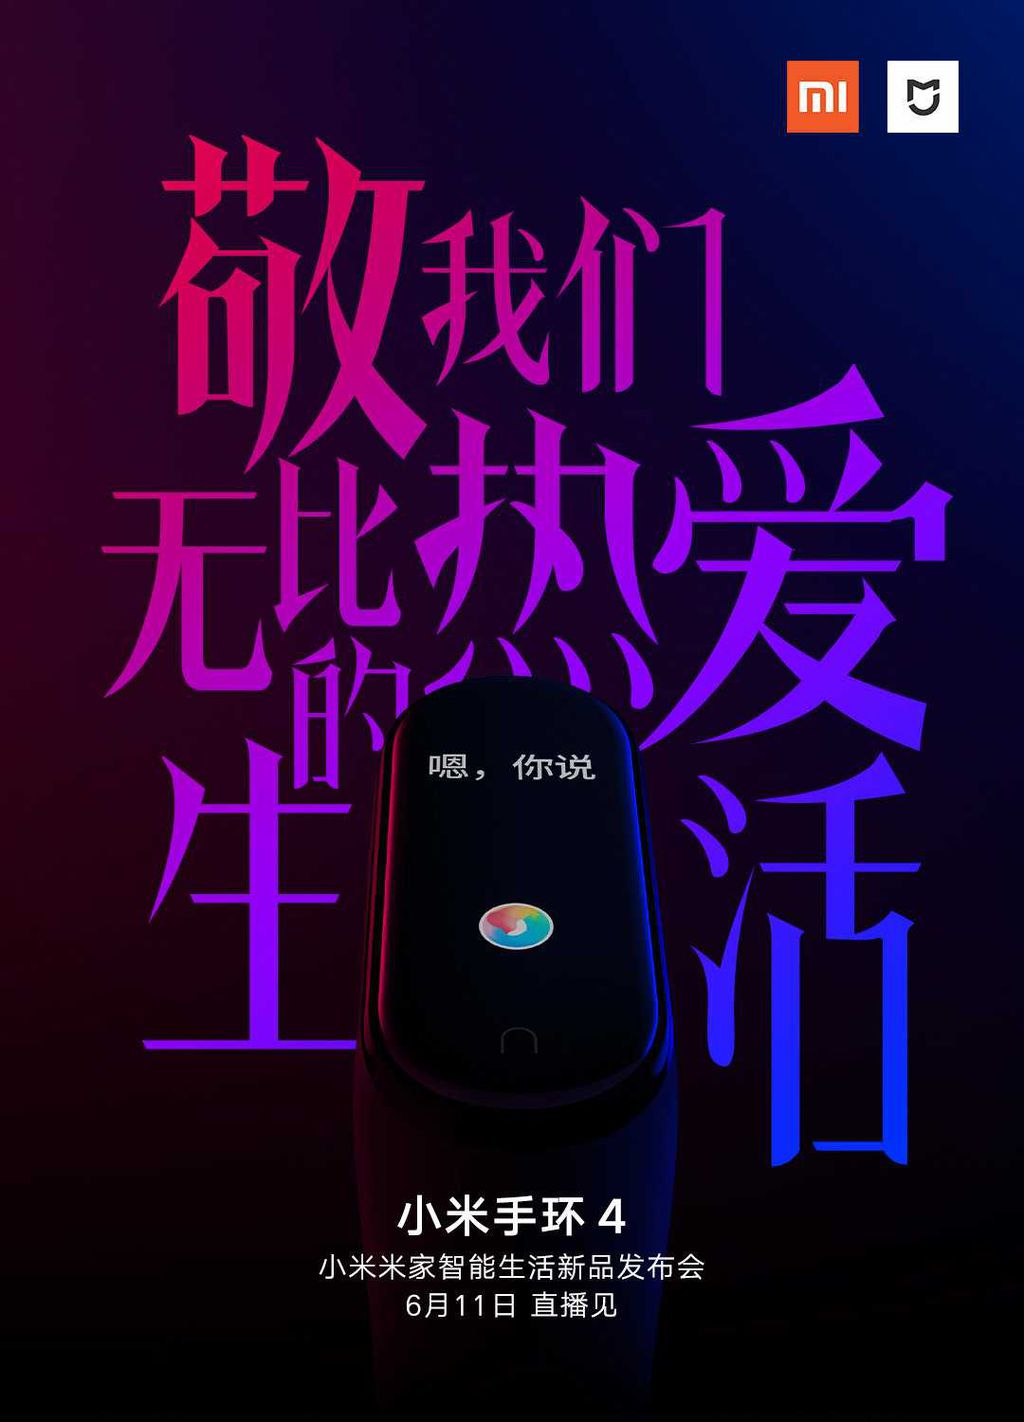 Xiaomi anuncia lançamento da Mi Band 4 para o dia 11 de junho